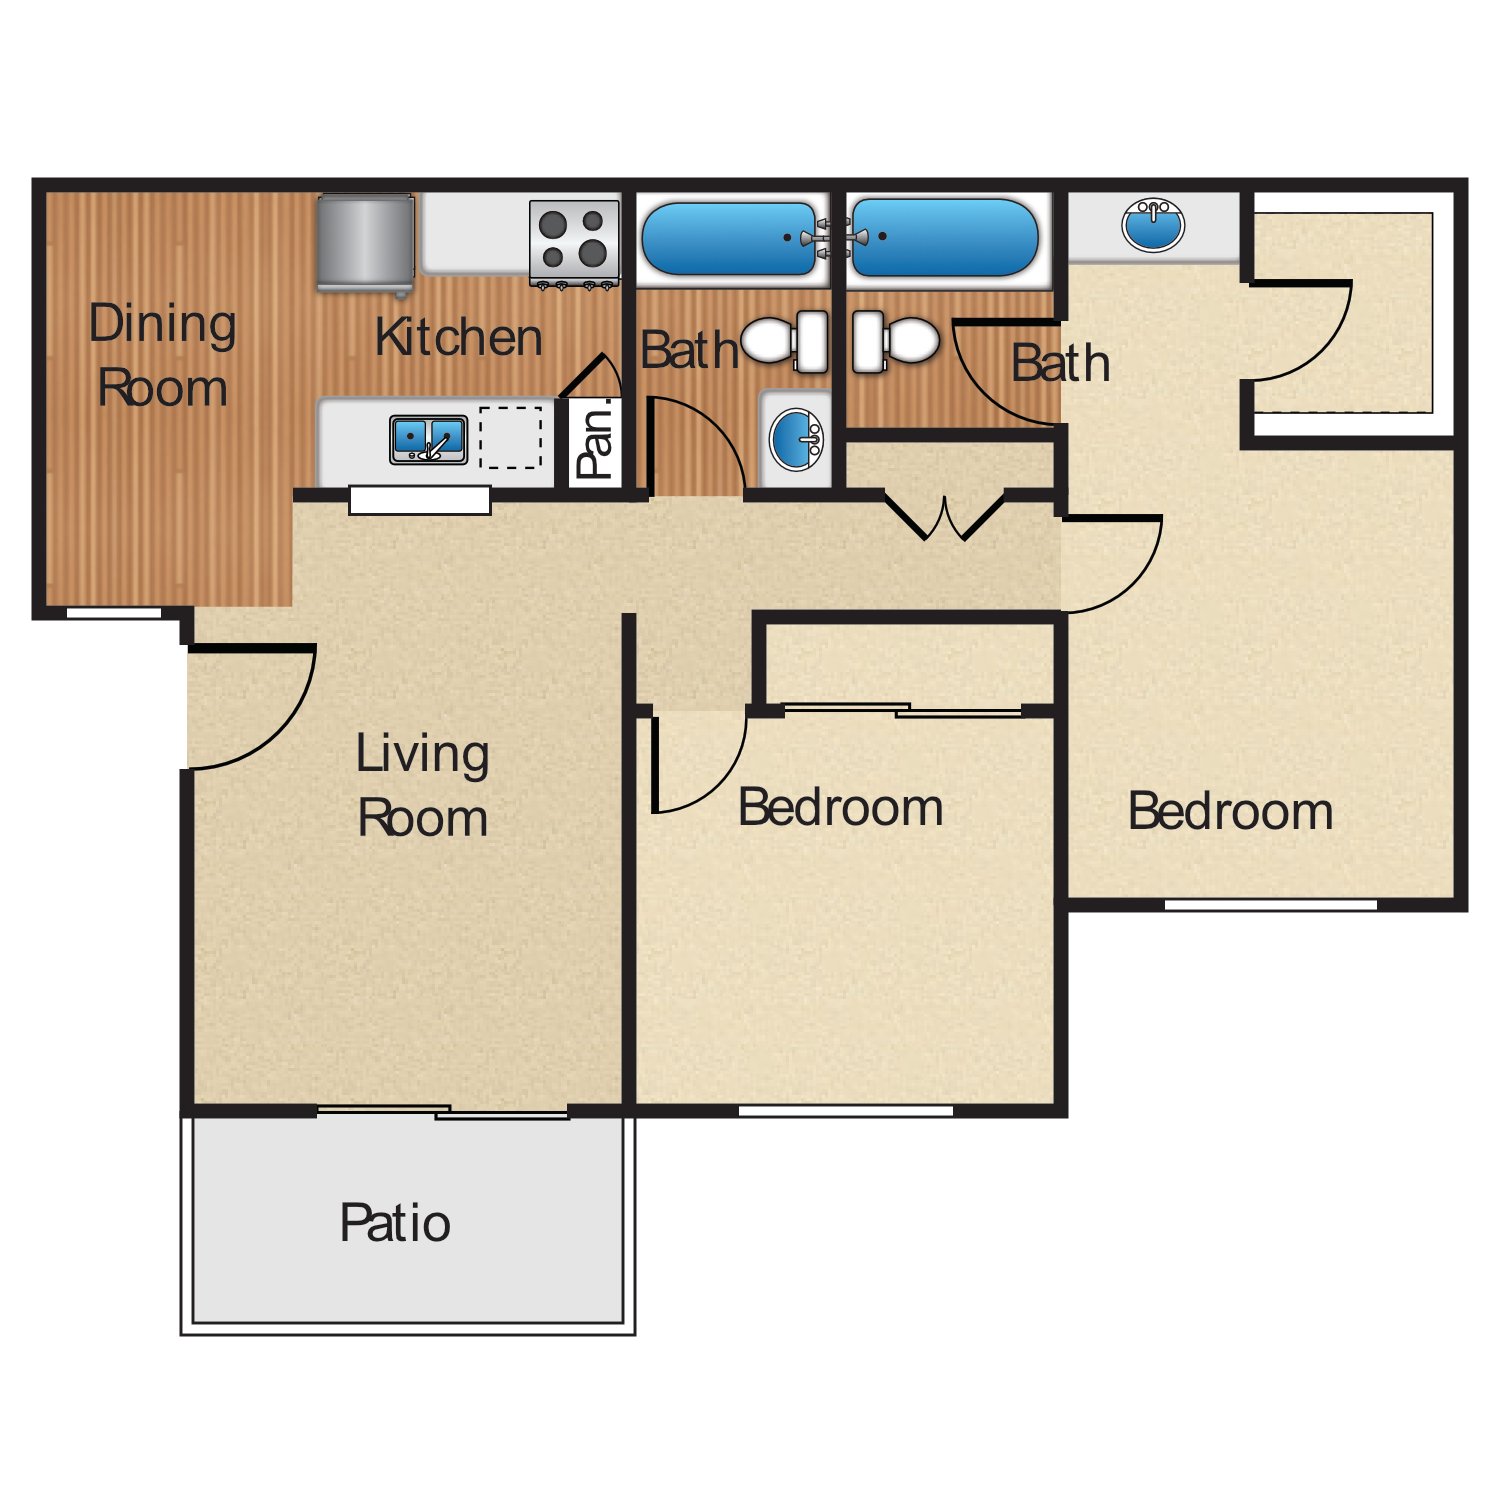 Plan D, a 2 bedroom 2 bathroom floor plan.